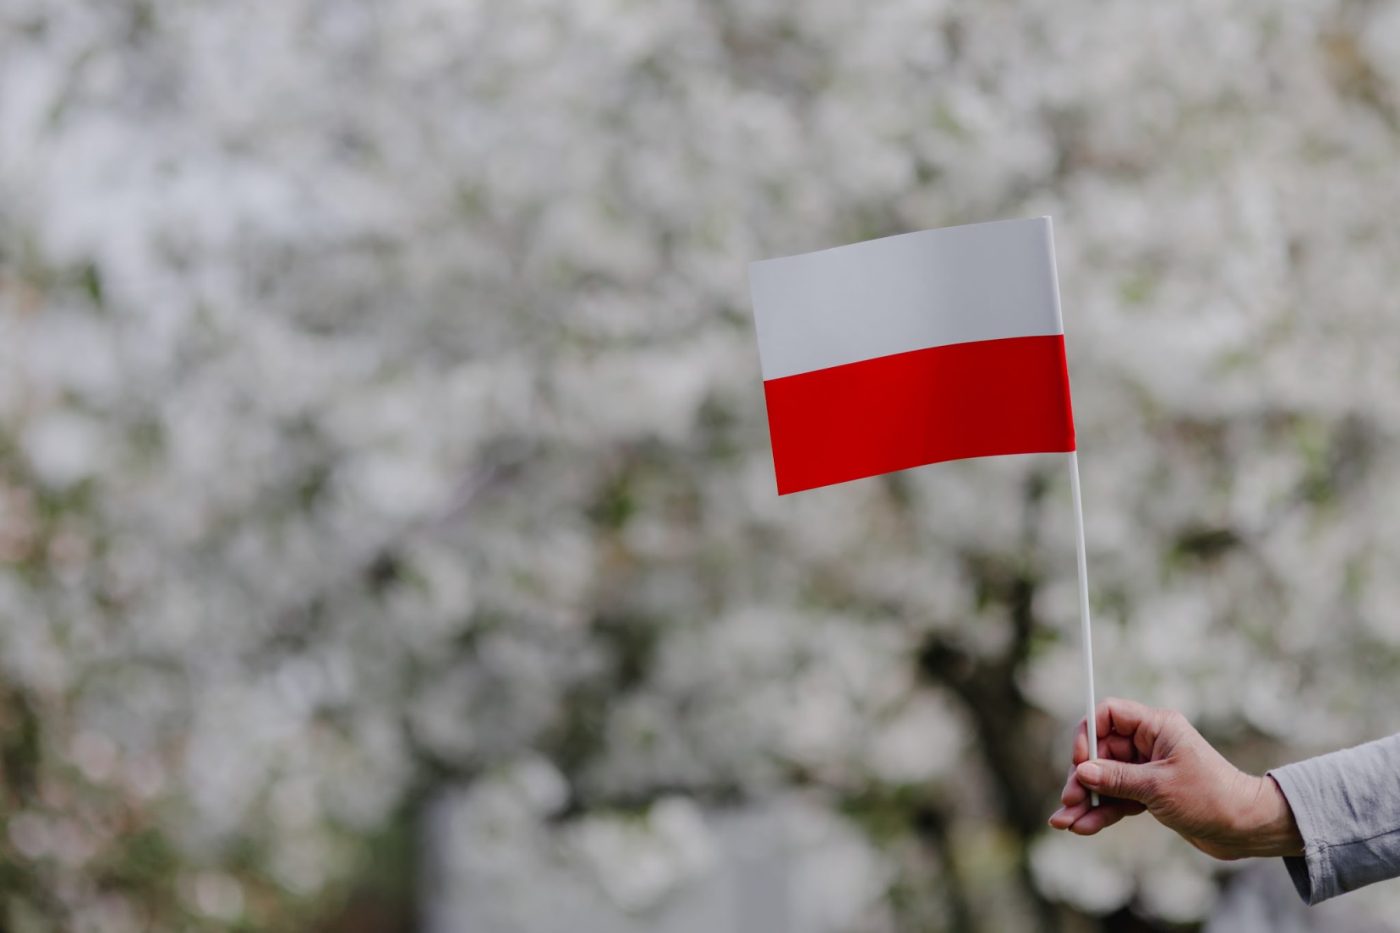 Photo: Flag of Poland via Pikrepo. https://www.pikrepo.com/fbmfc/flag-of-poland-polska-flaga